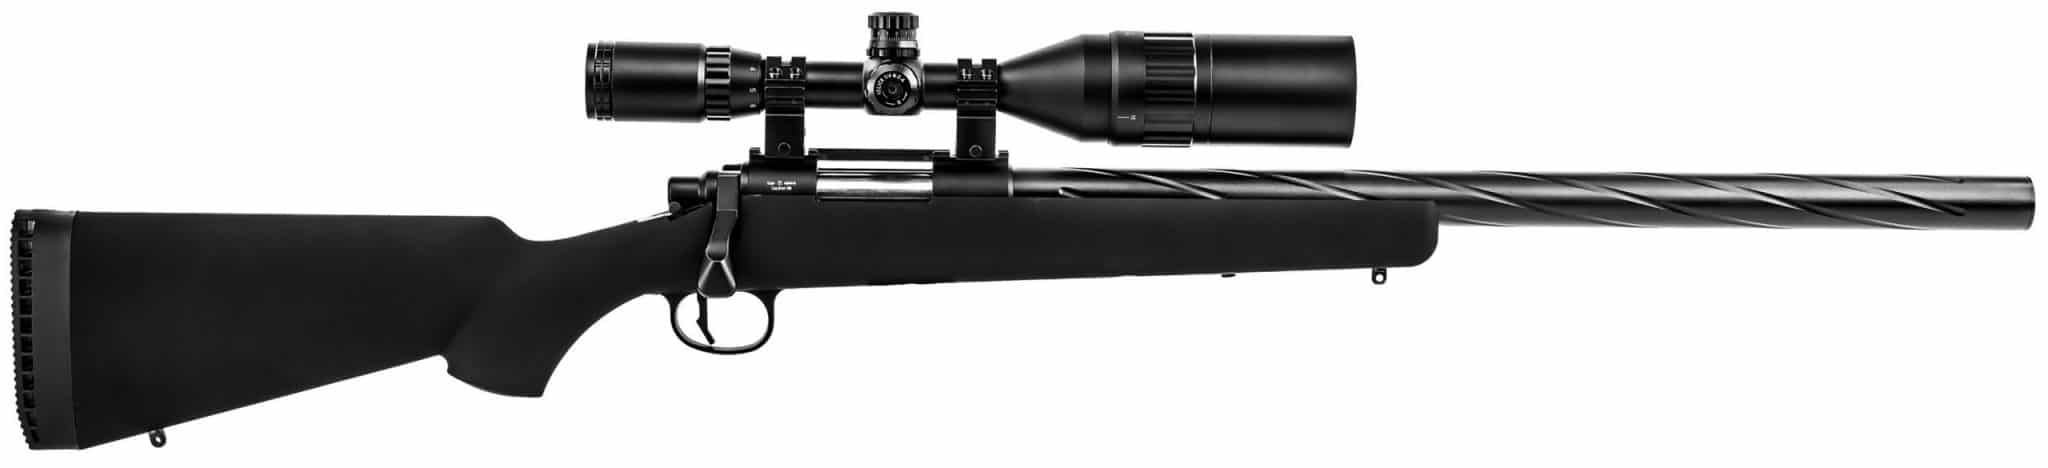 Novritsch SSG10 A1 Airsoft Sniper Rifle Review